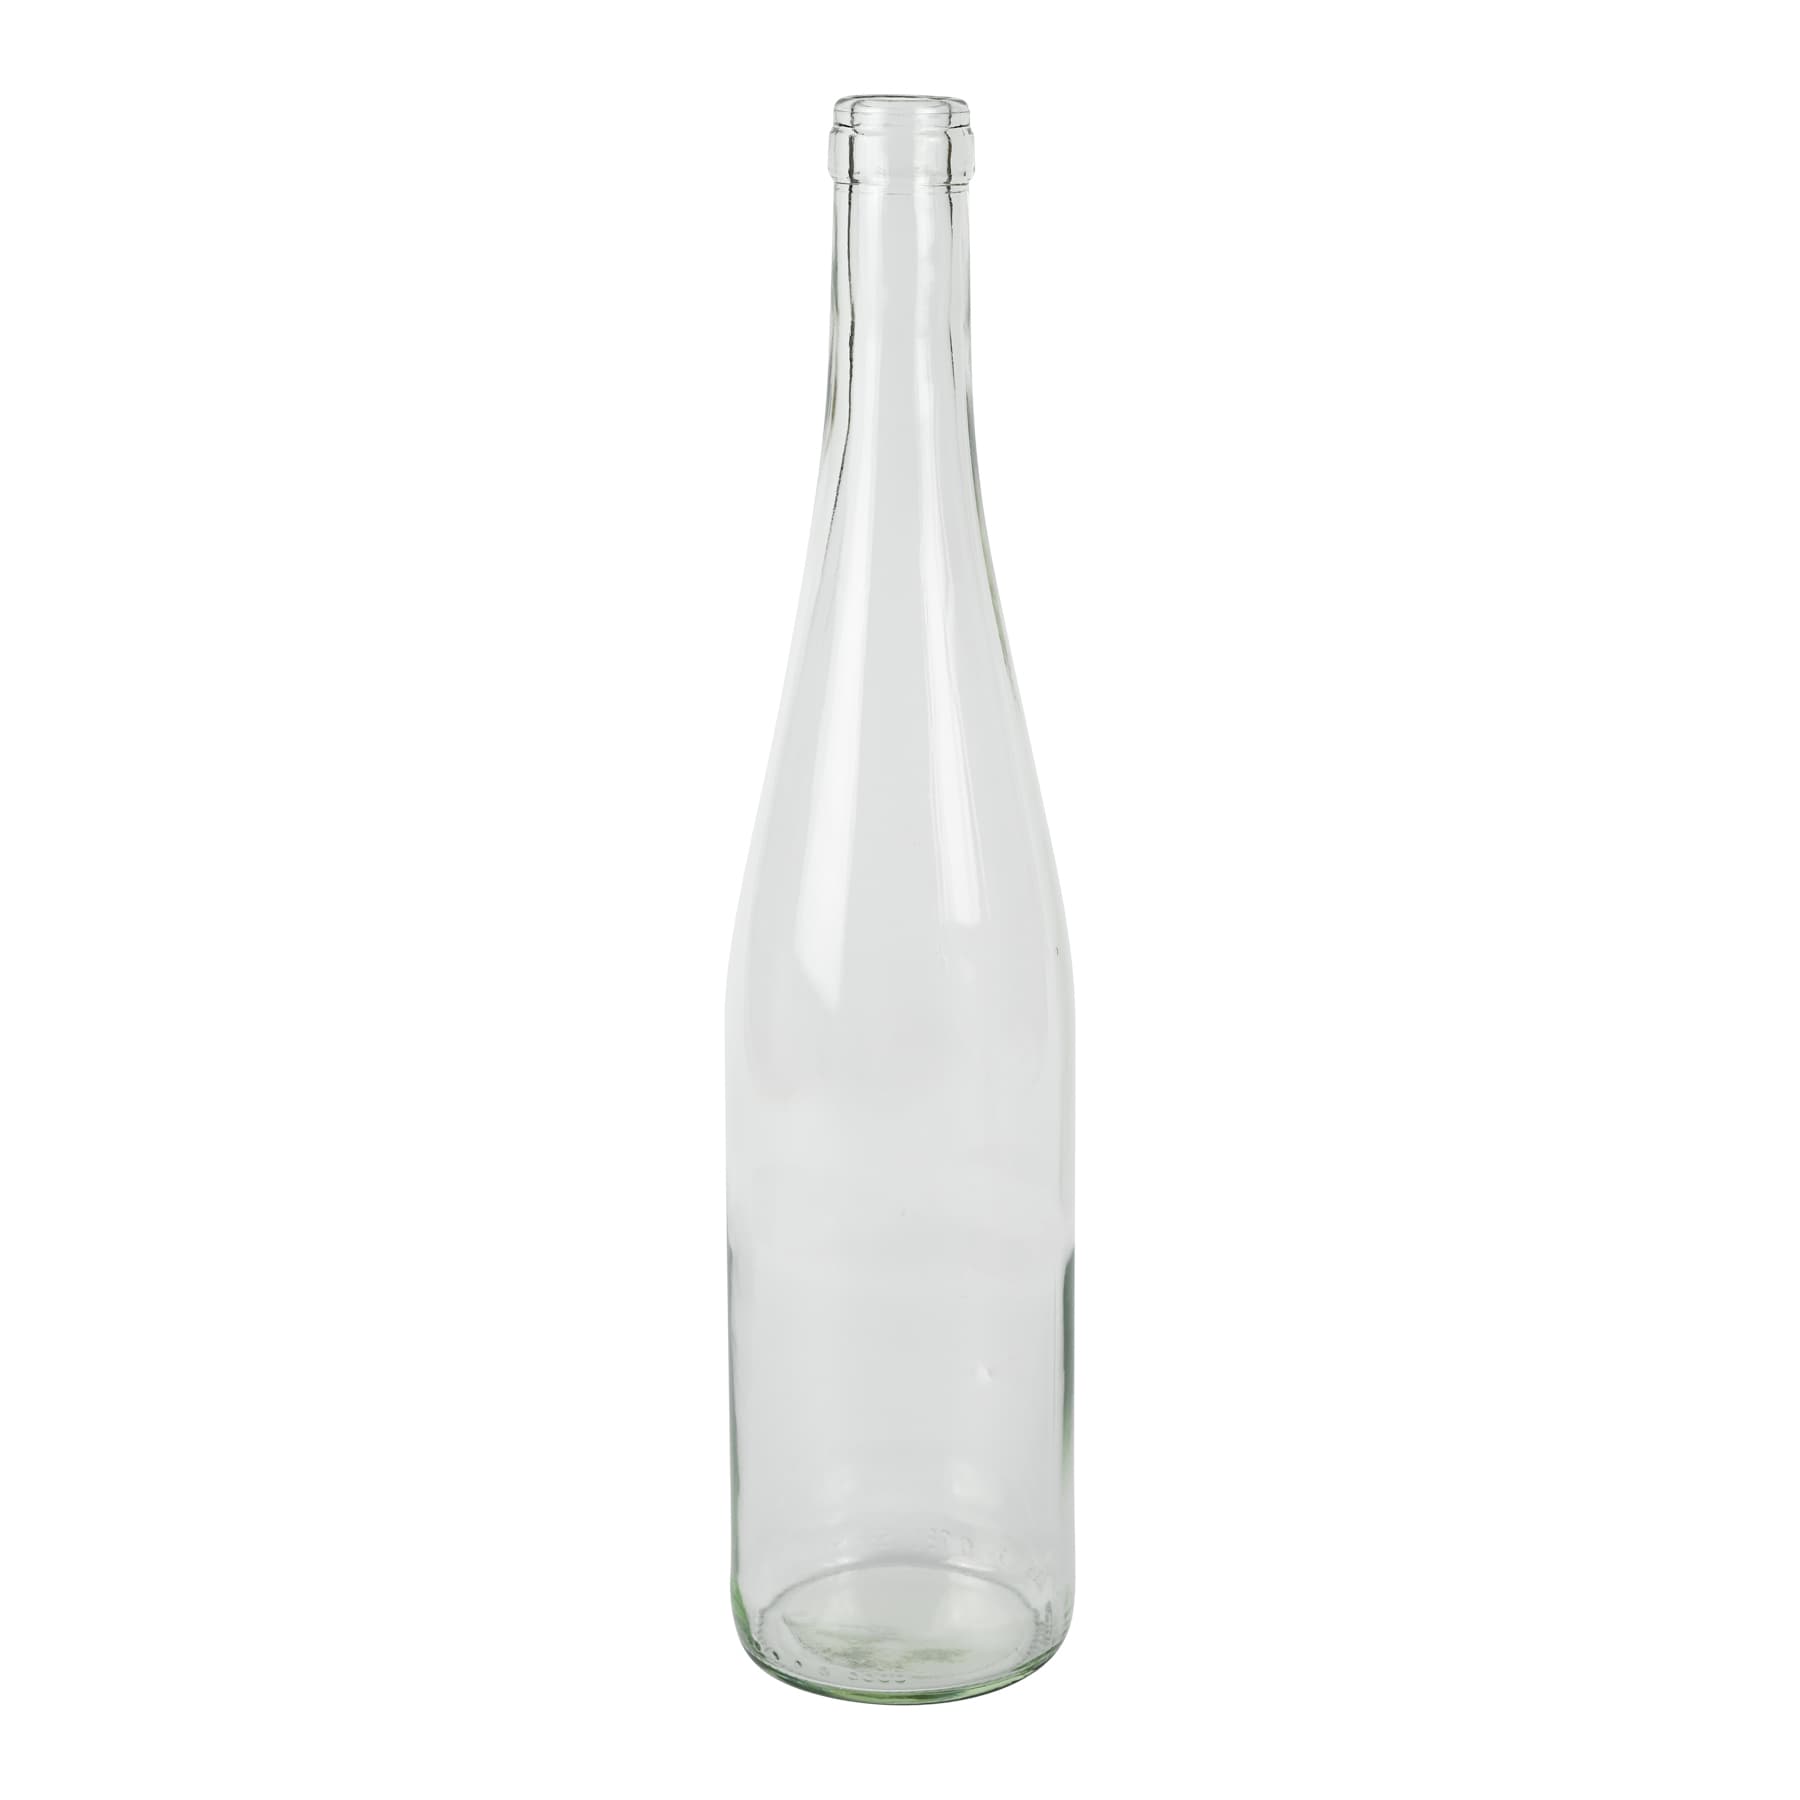 Weinflasche 0,75 l Schlegel 330 mm hoch klar bzw. weiß, Mündung f. Kork